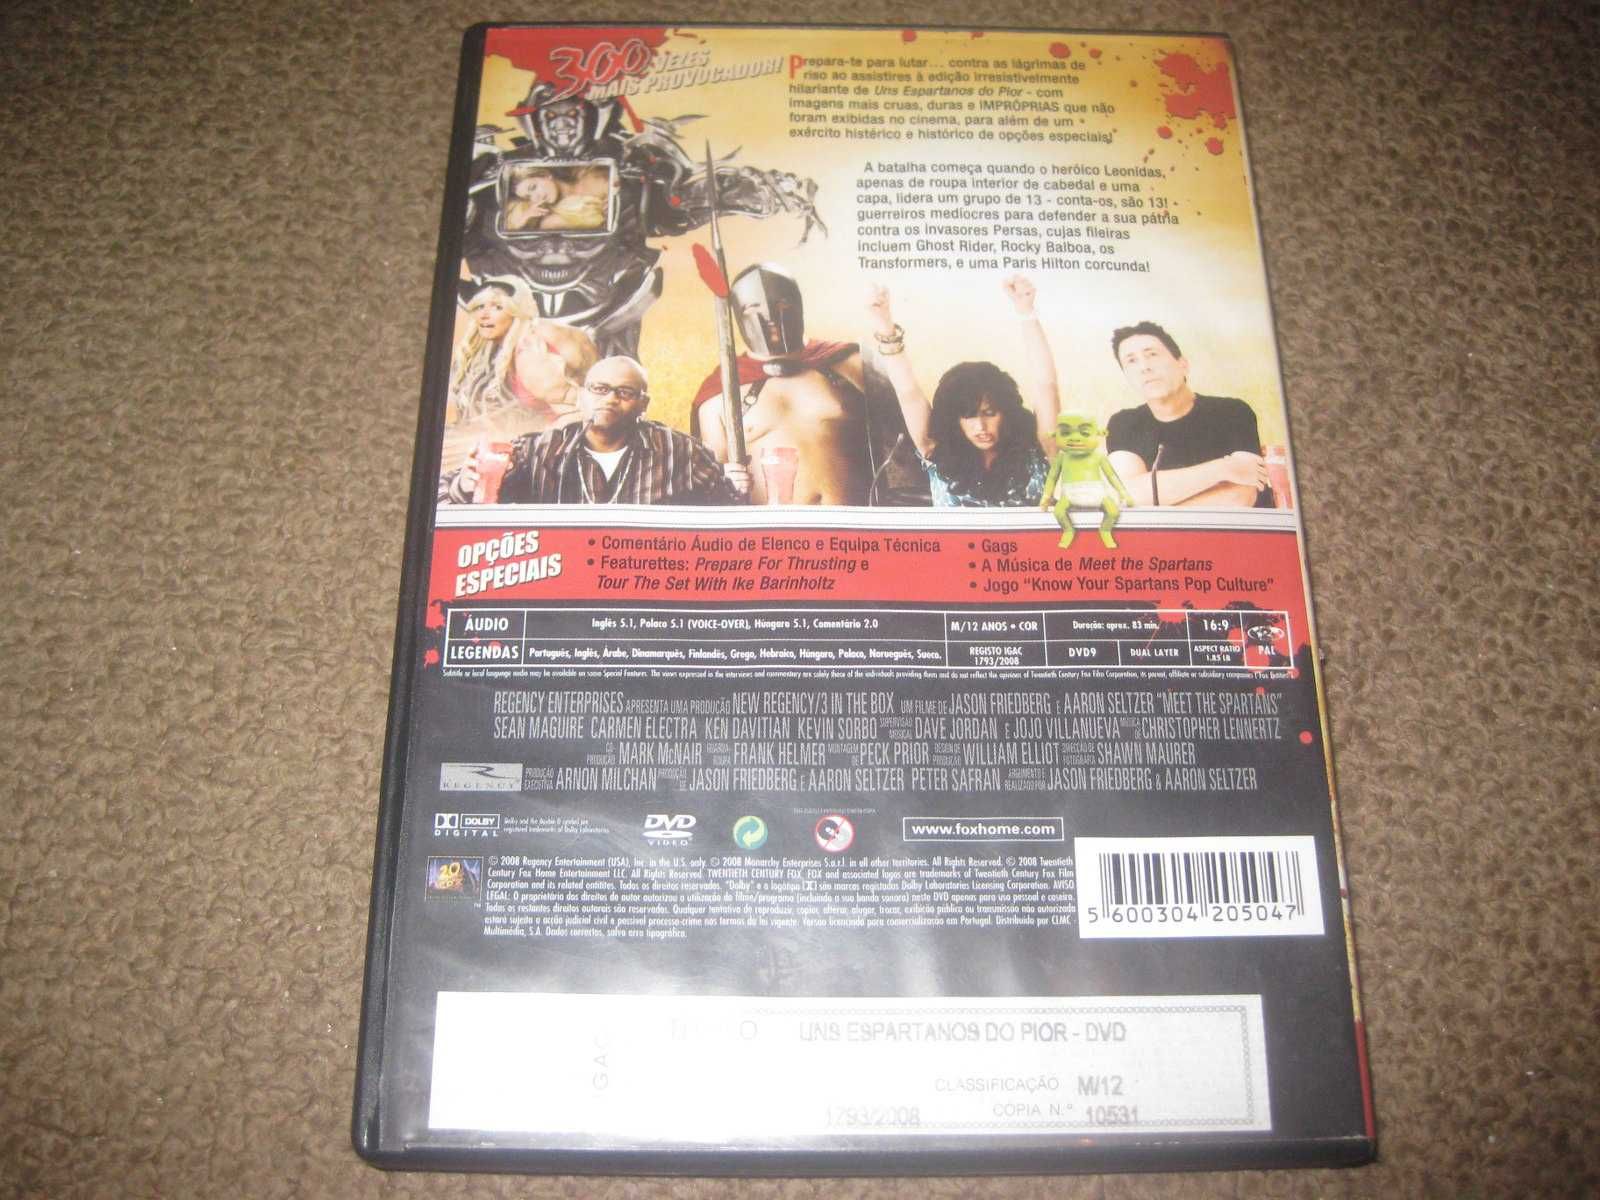 DVD "Uns Espartanos do Pior" com Carmen Electra